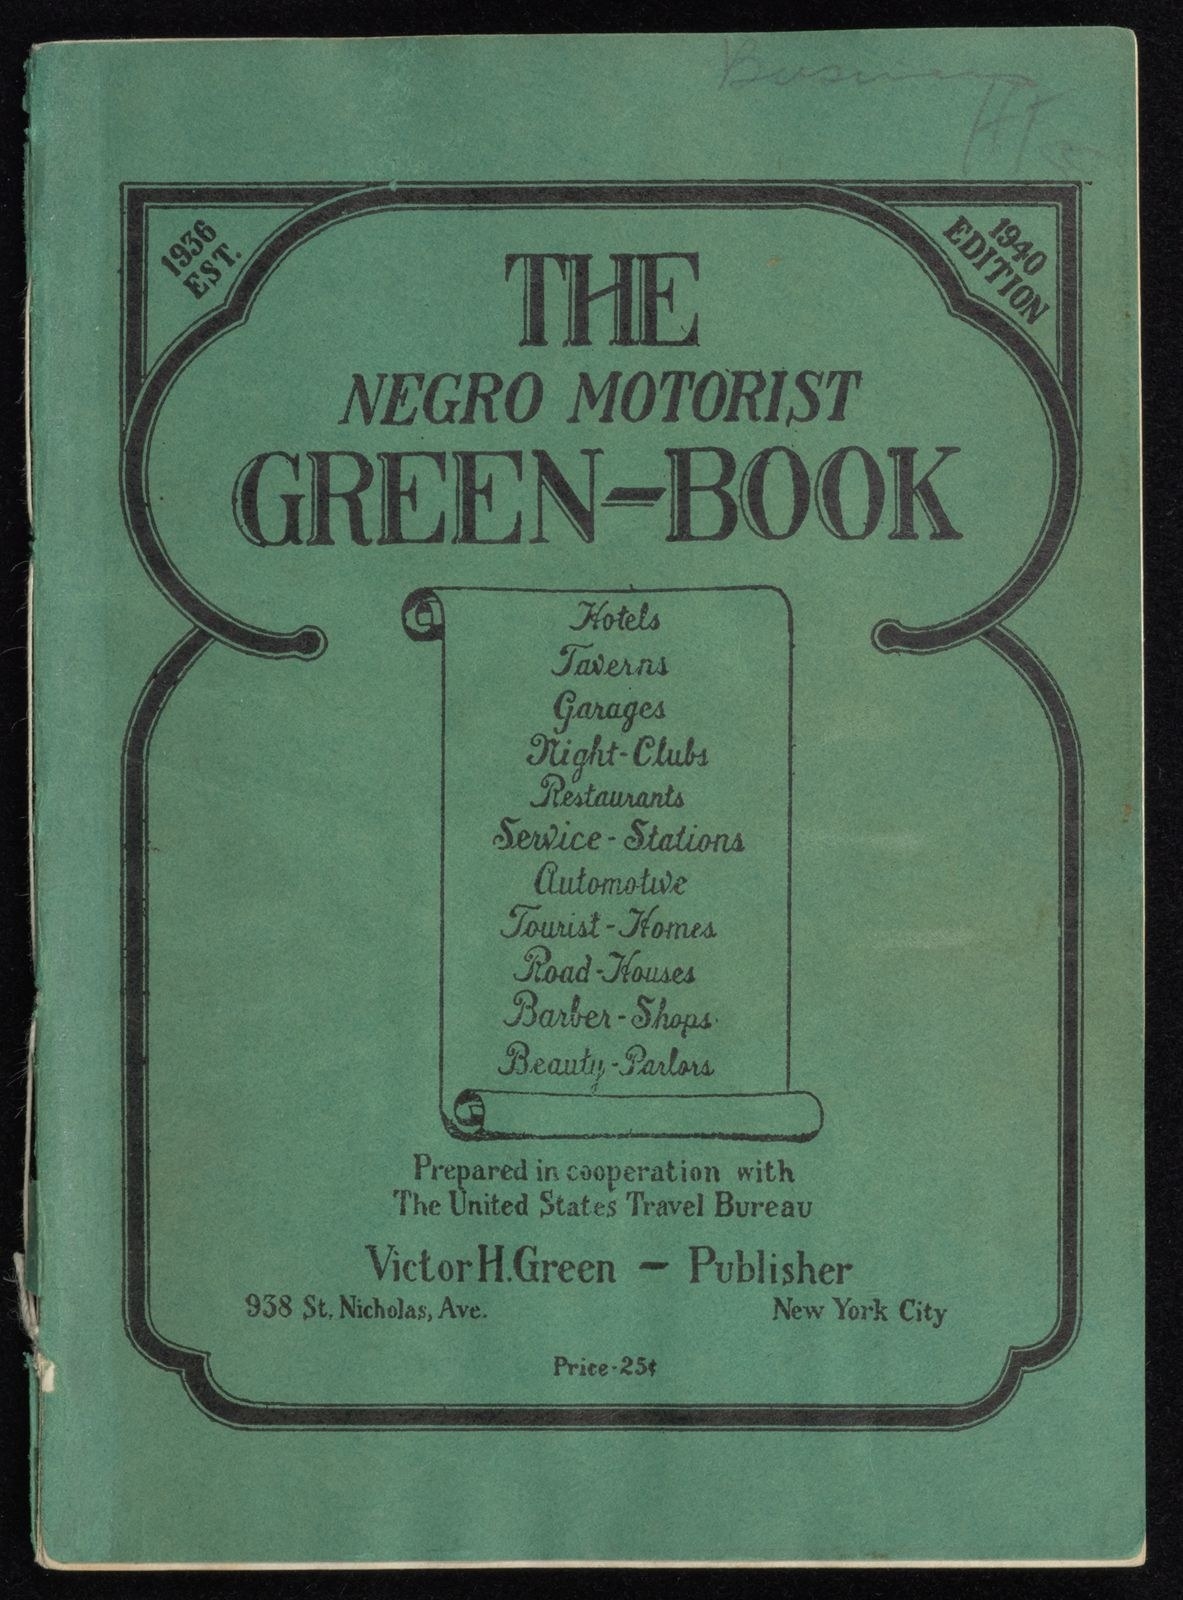 的封面“黑人司机green-book"